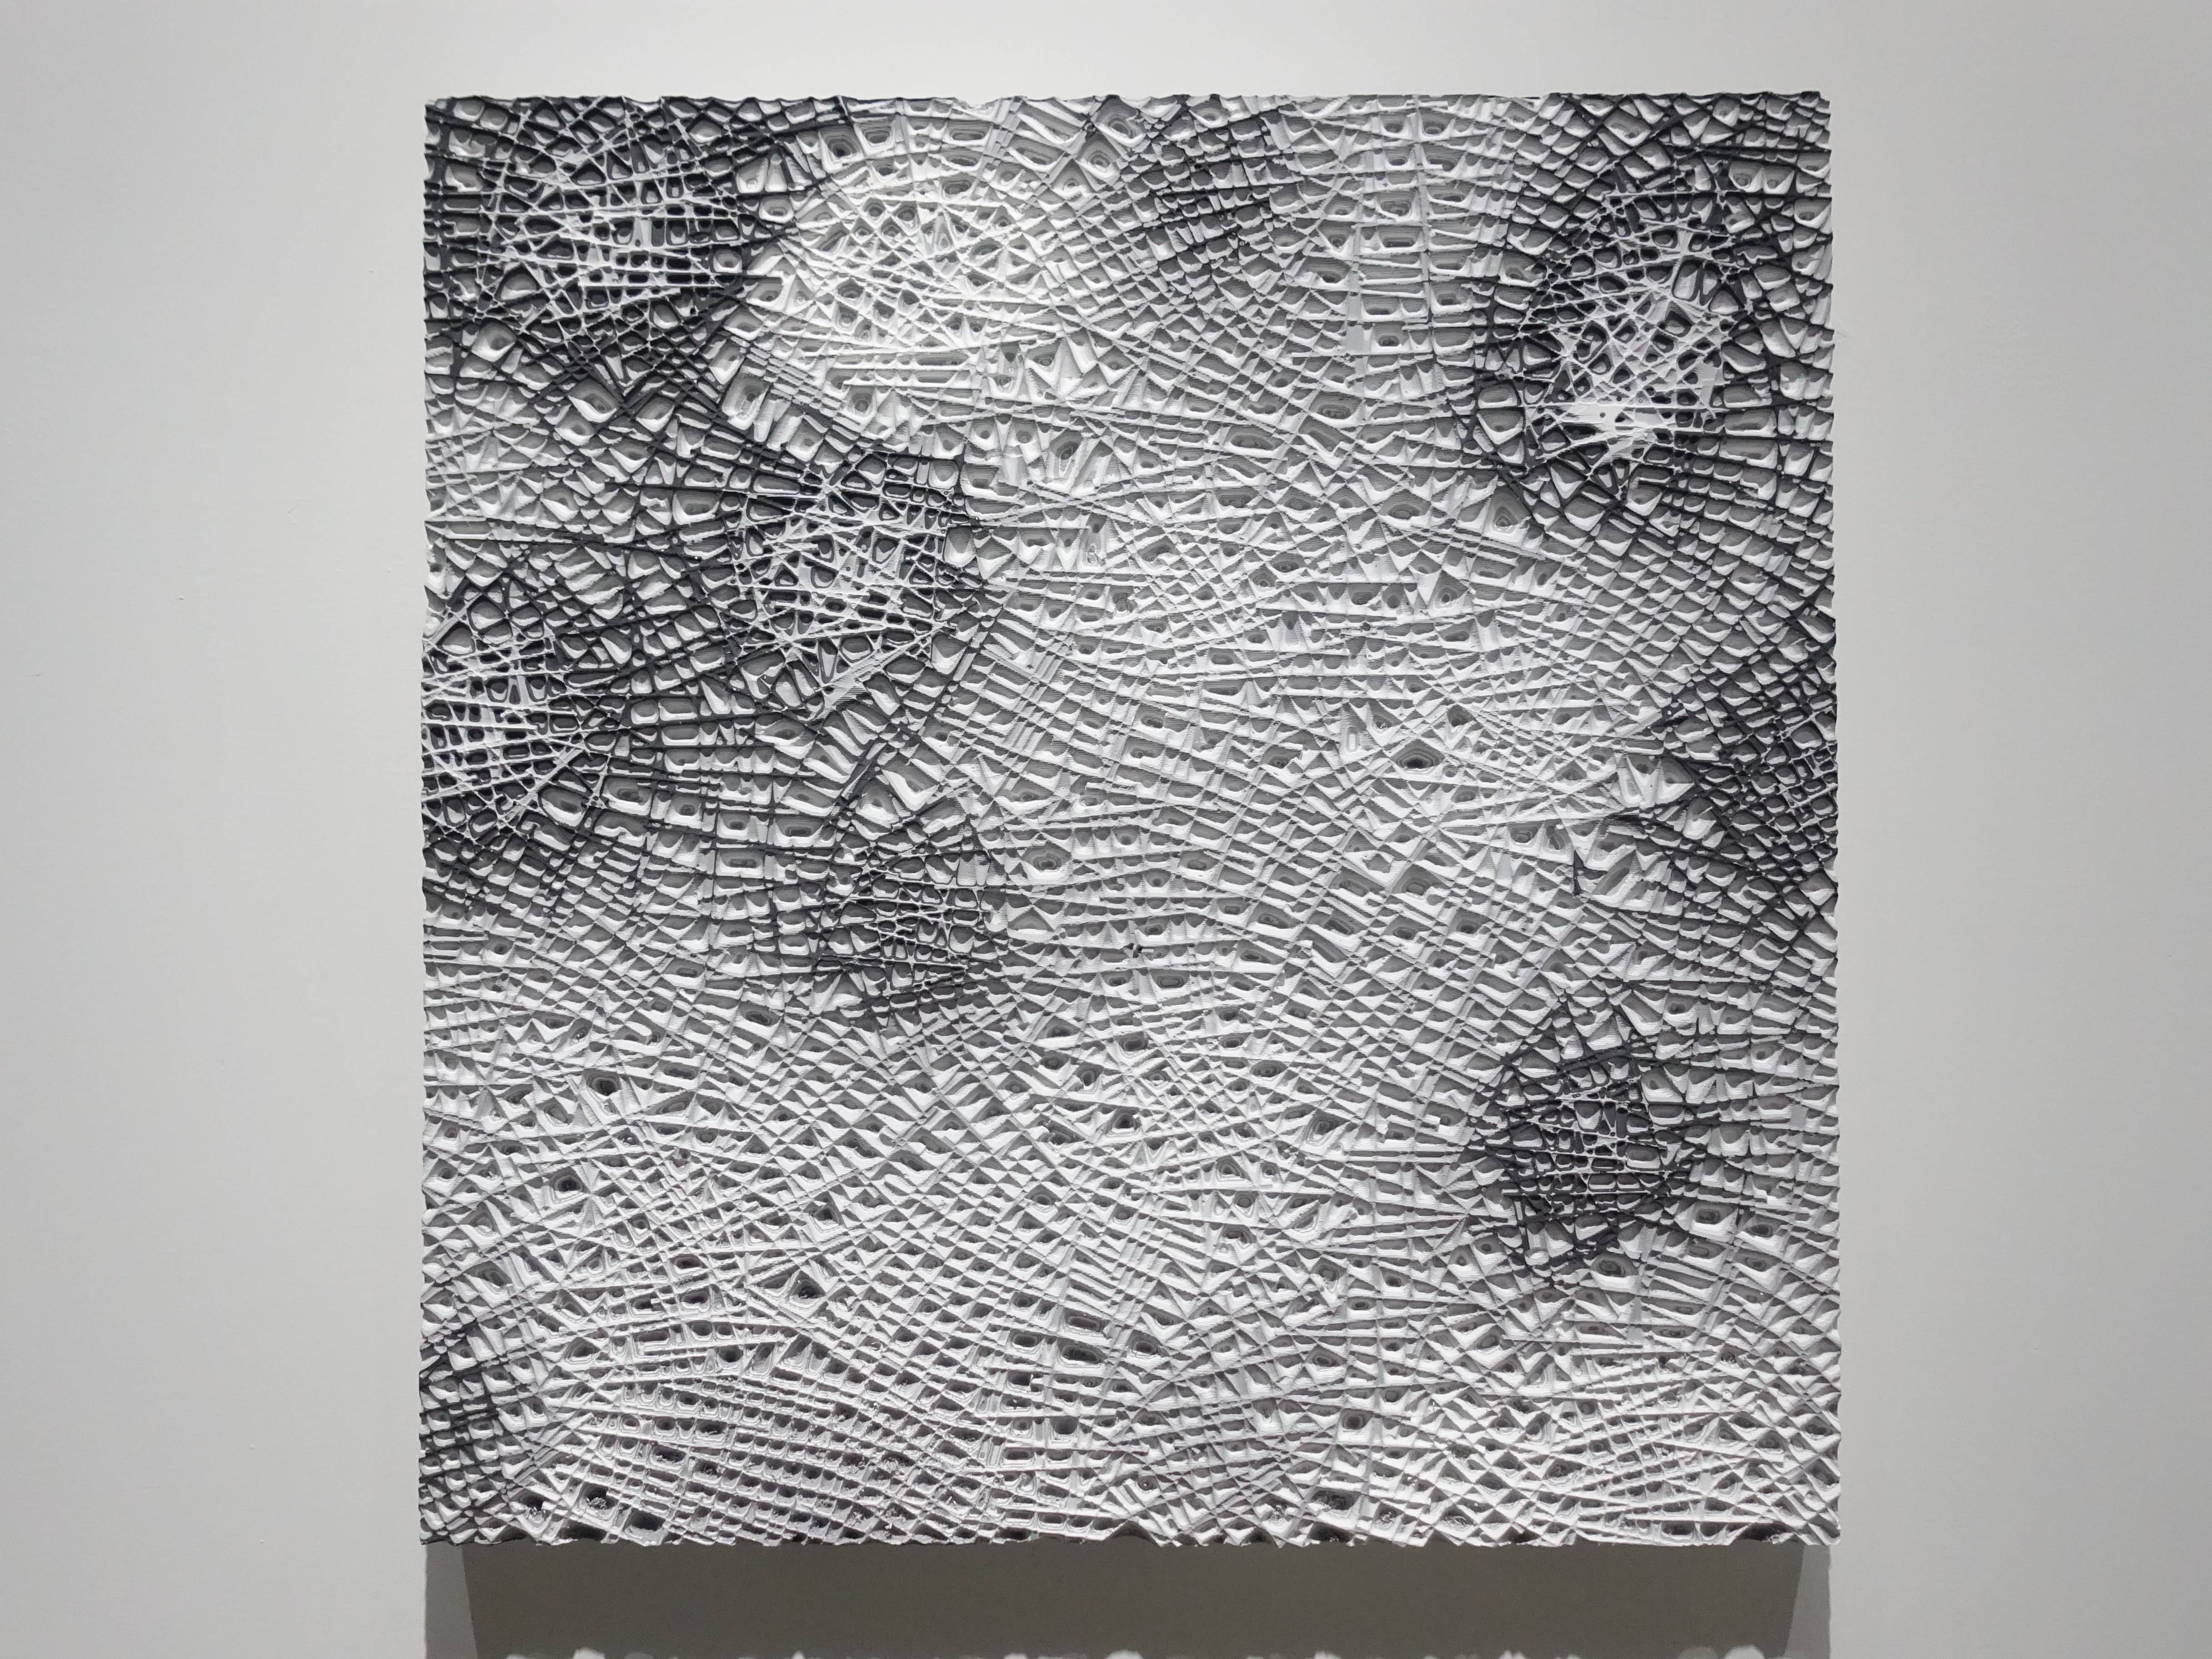 歐勁，《無題-145》，42 x 41 cm，木板、丙烯、綜合材料，2019。